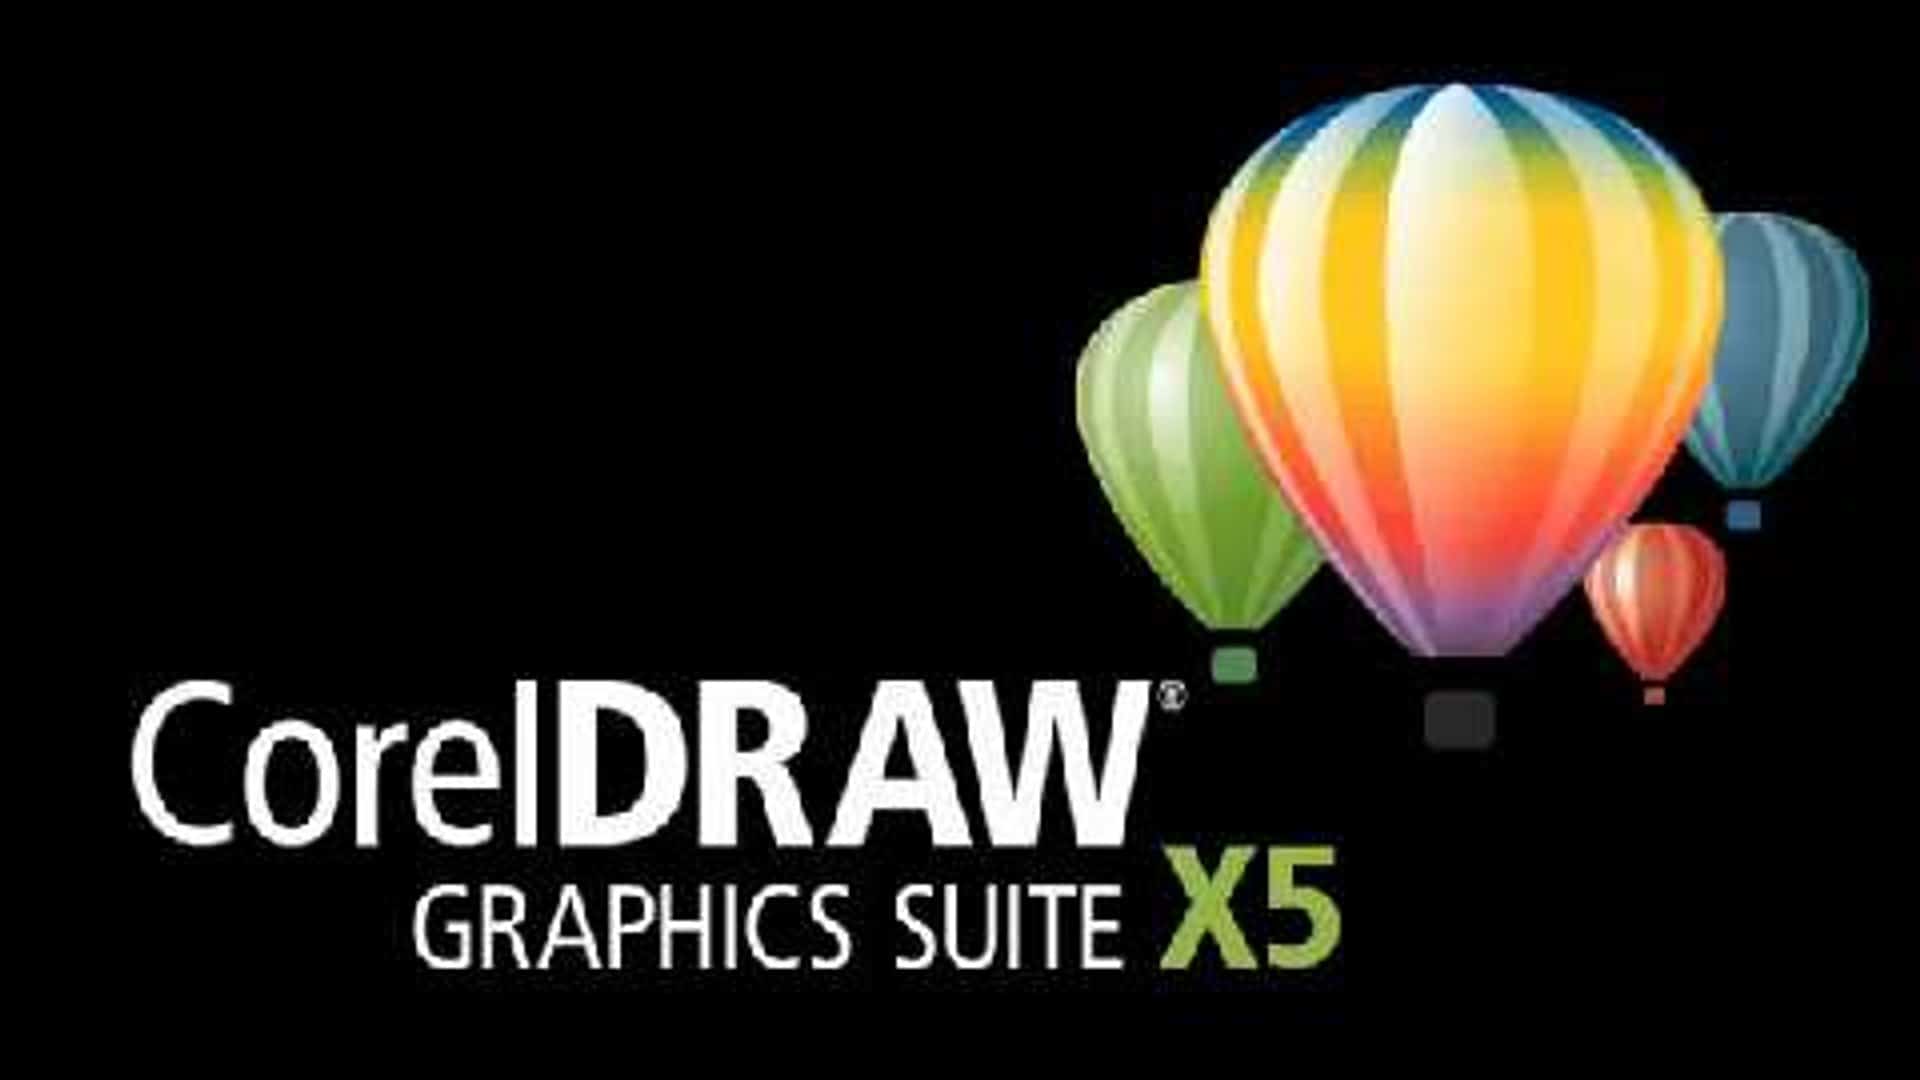 Requisitos para instalar Corel Draw X5